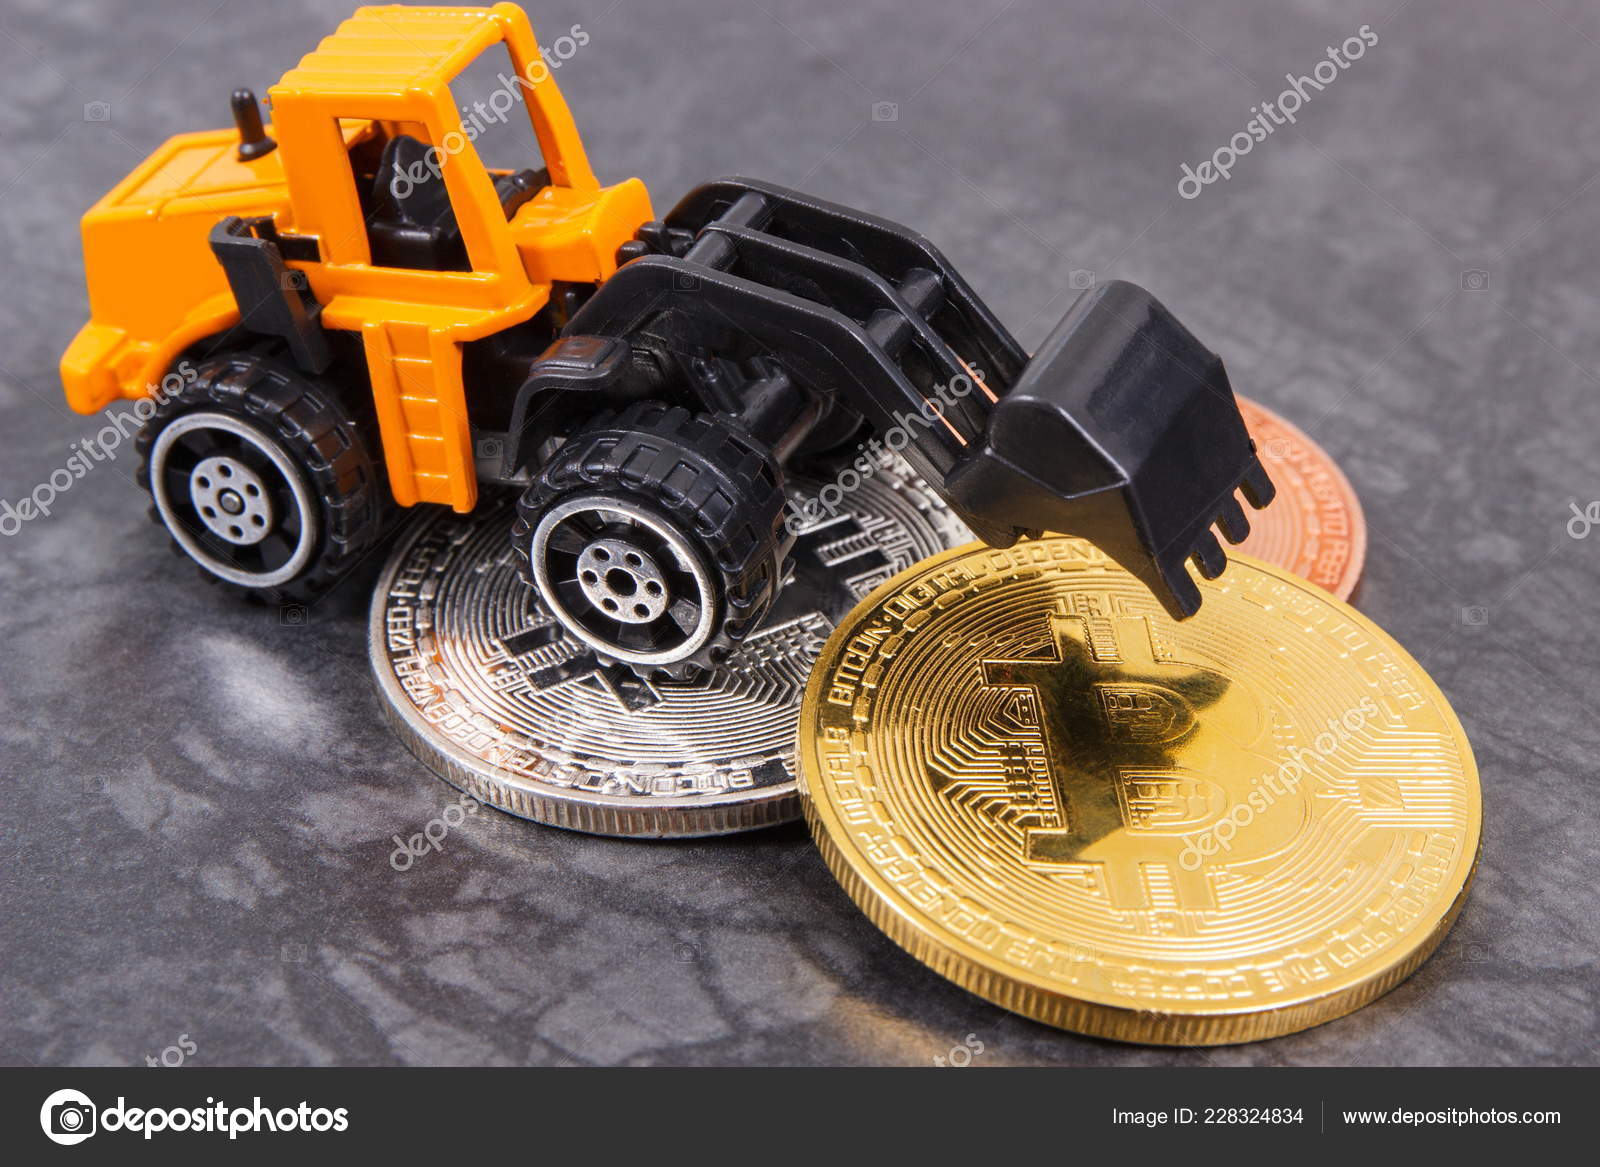 Tag: minatore bitcoin